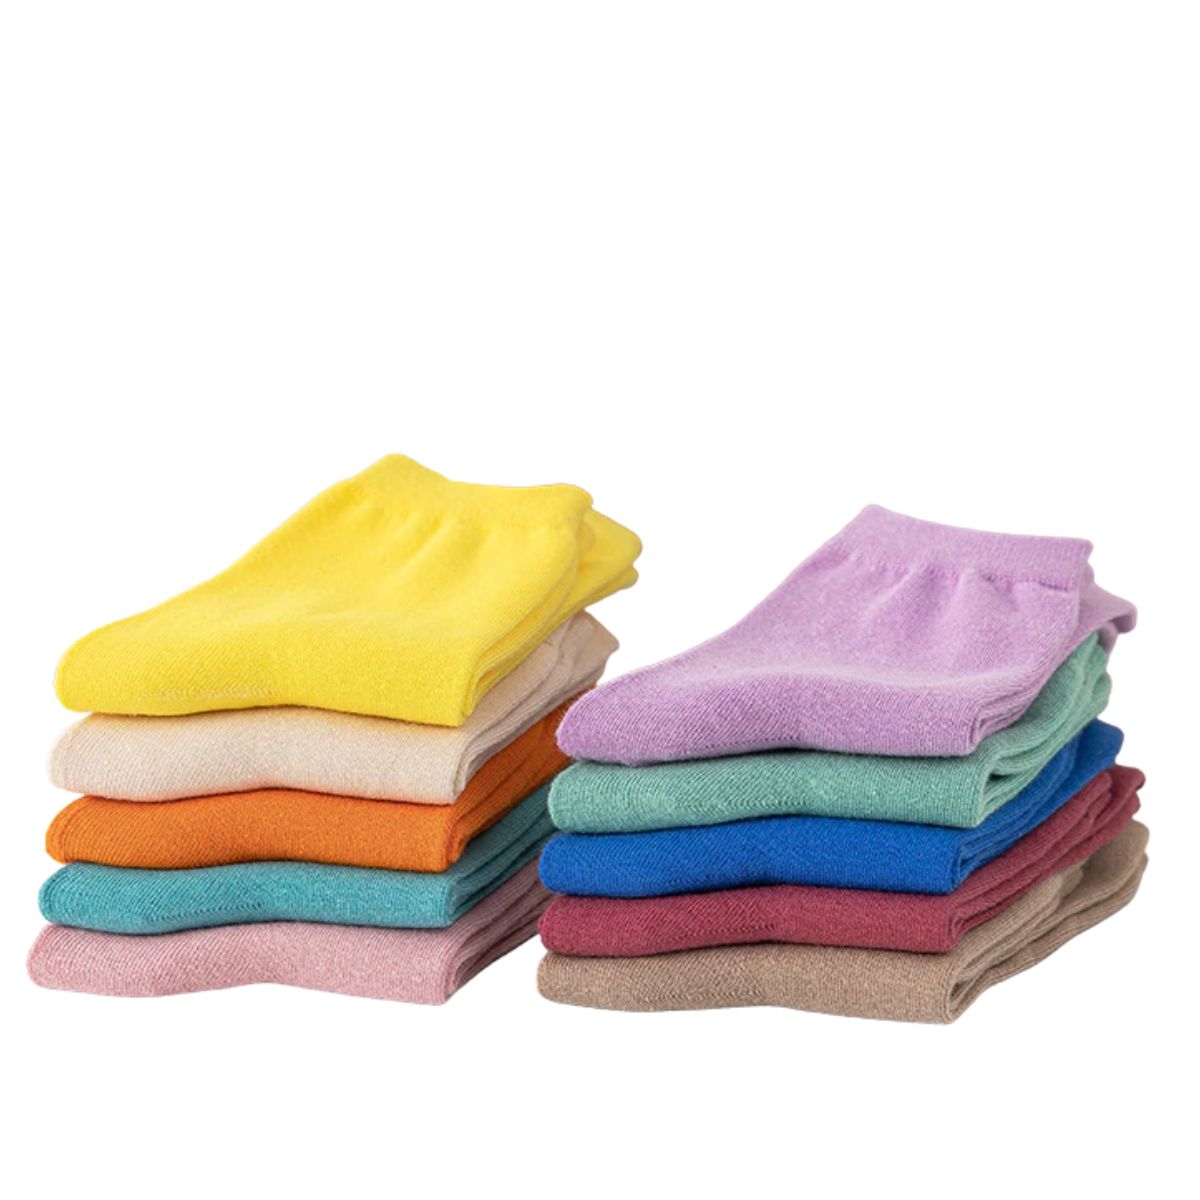 Calcetines antiderrapantes para niños varias tallas (12 pares